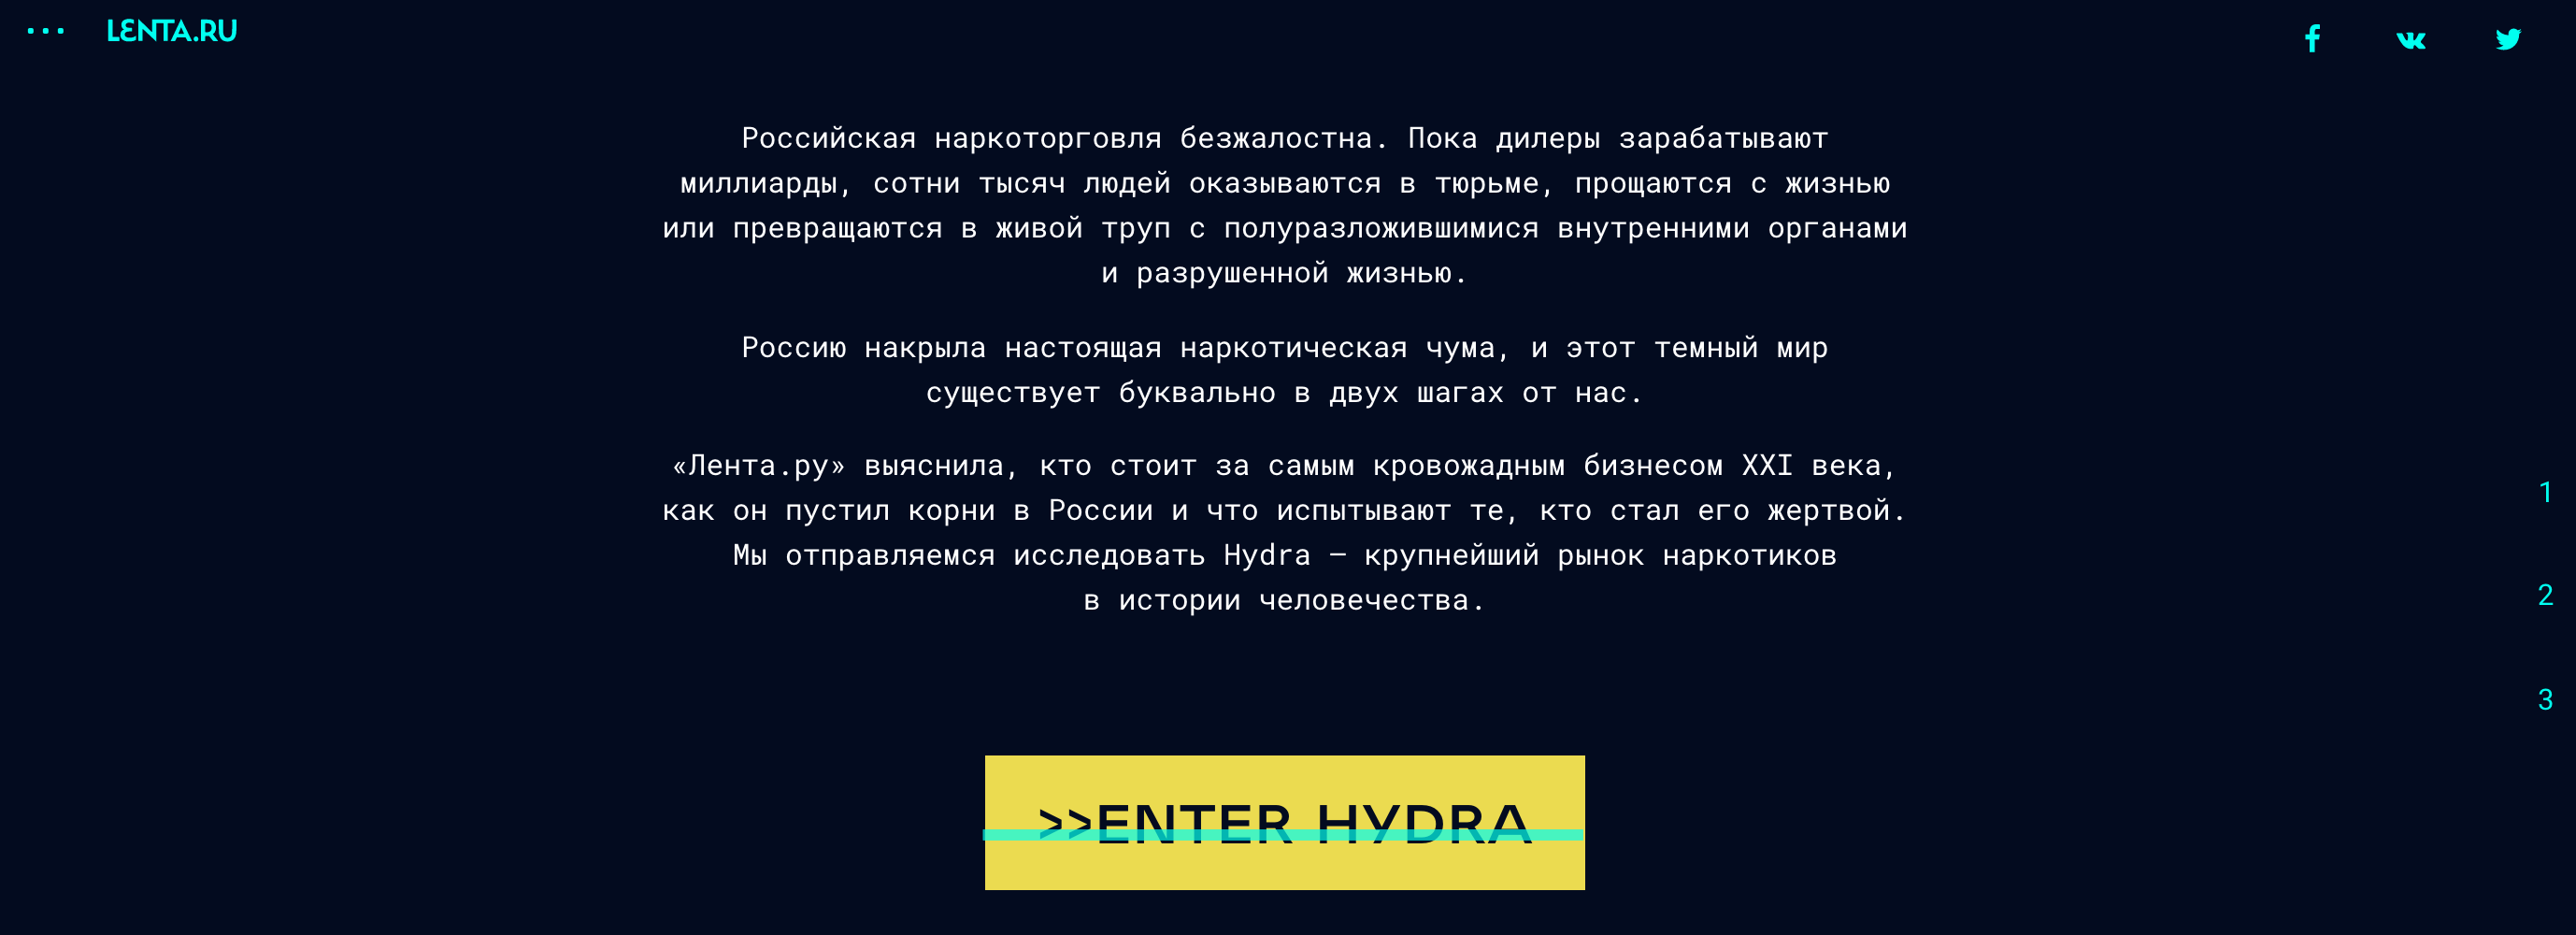 Darknet обзор hydra топ 5 сайтов даркнет hudra